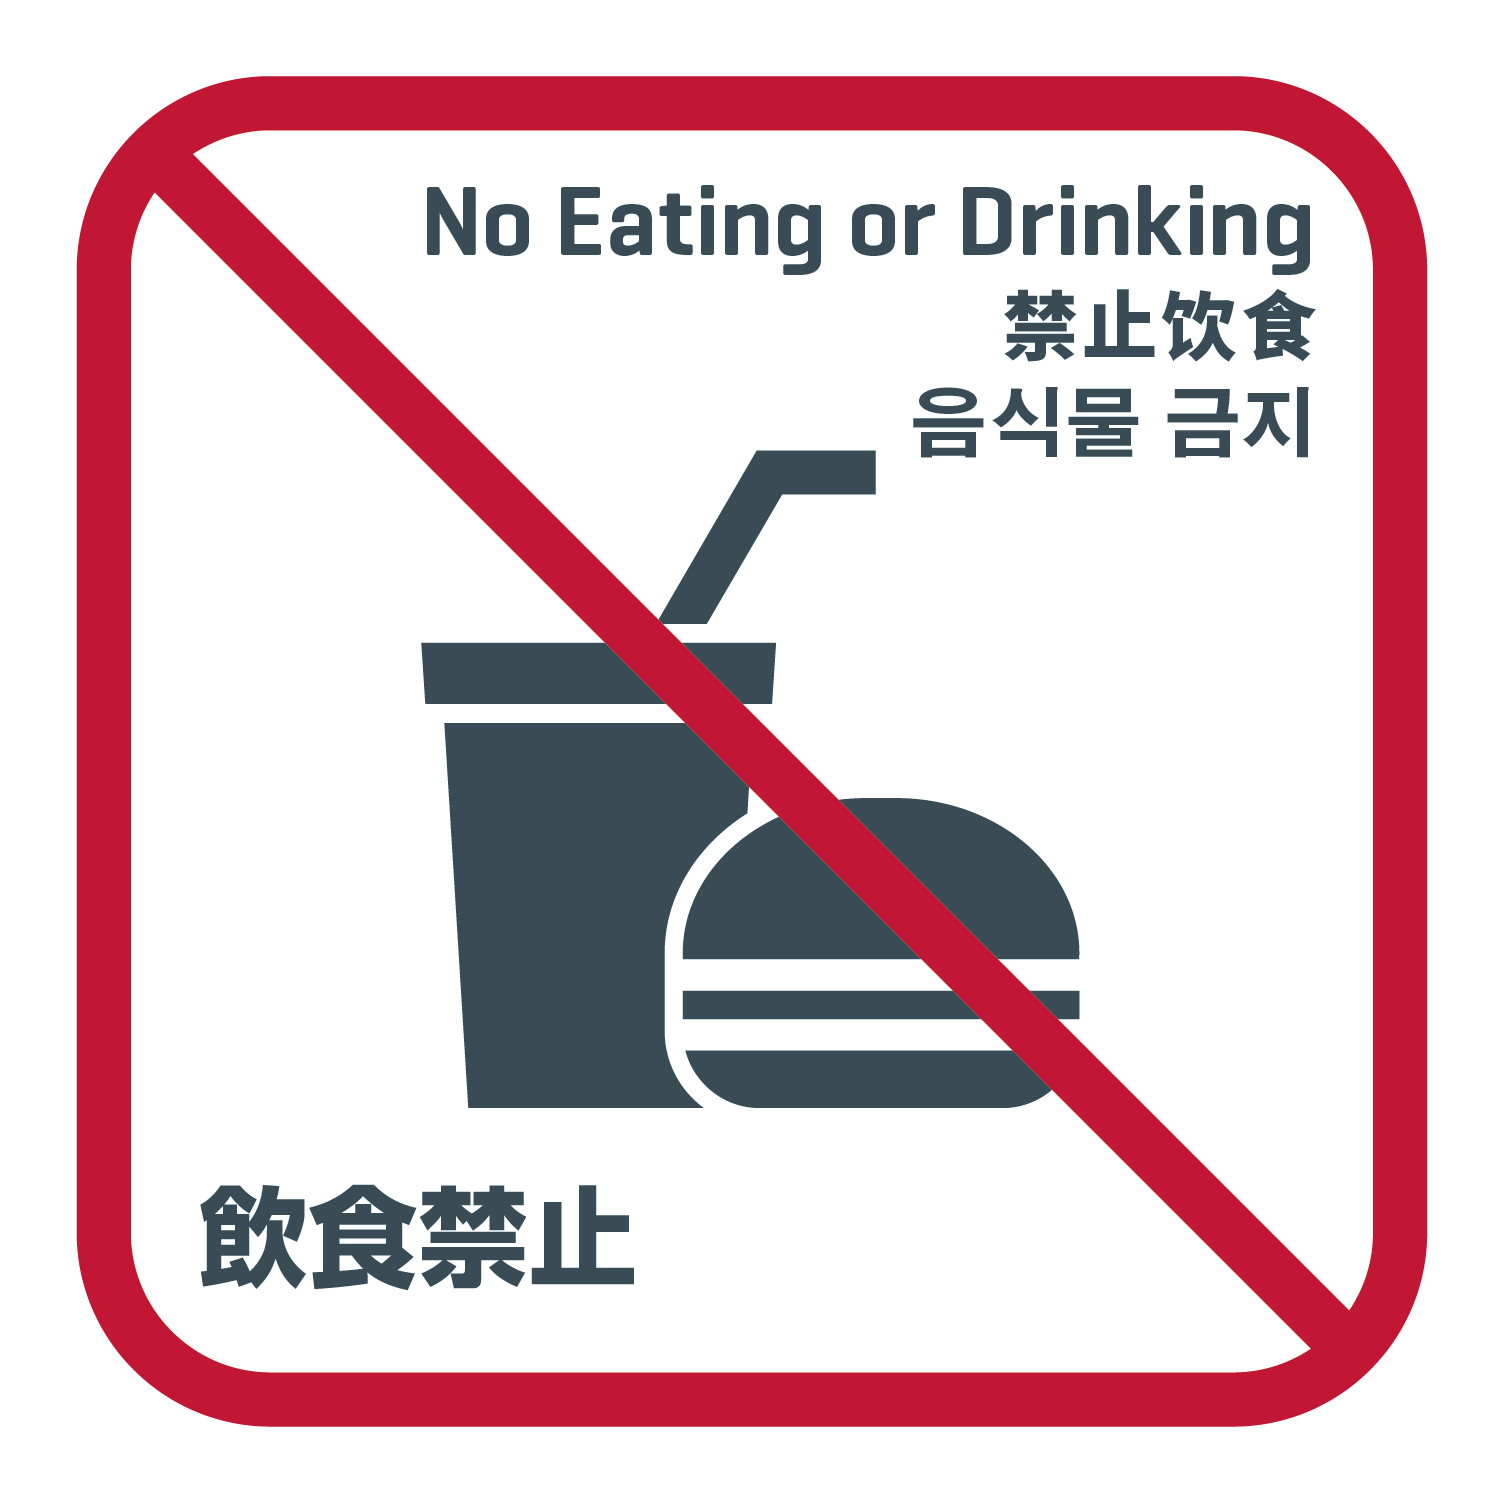 먹거나 마시지 않는다